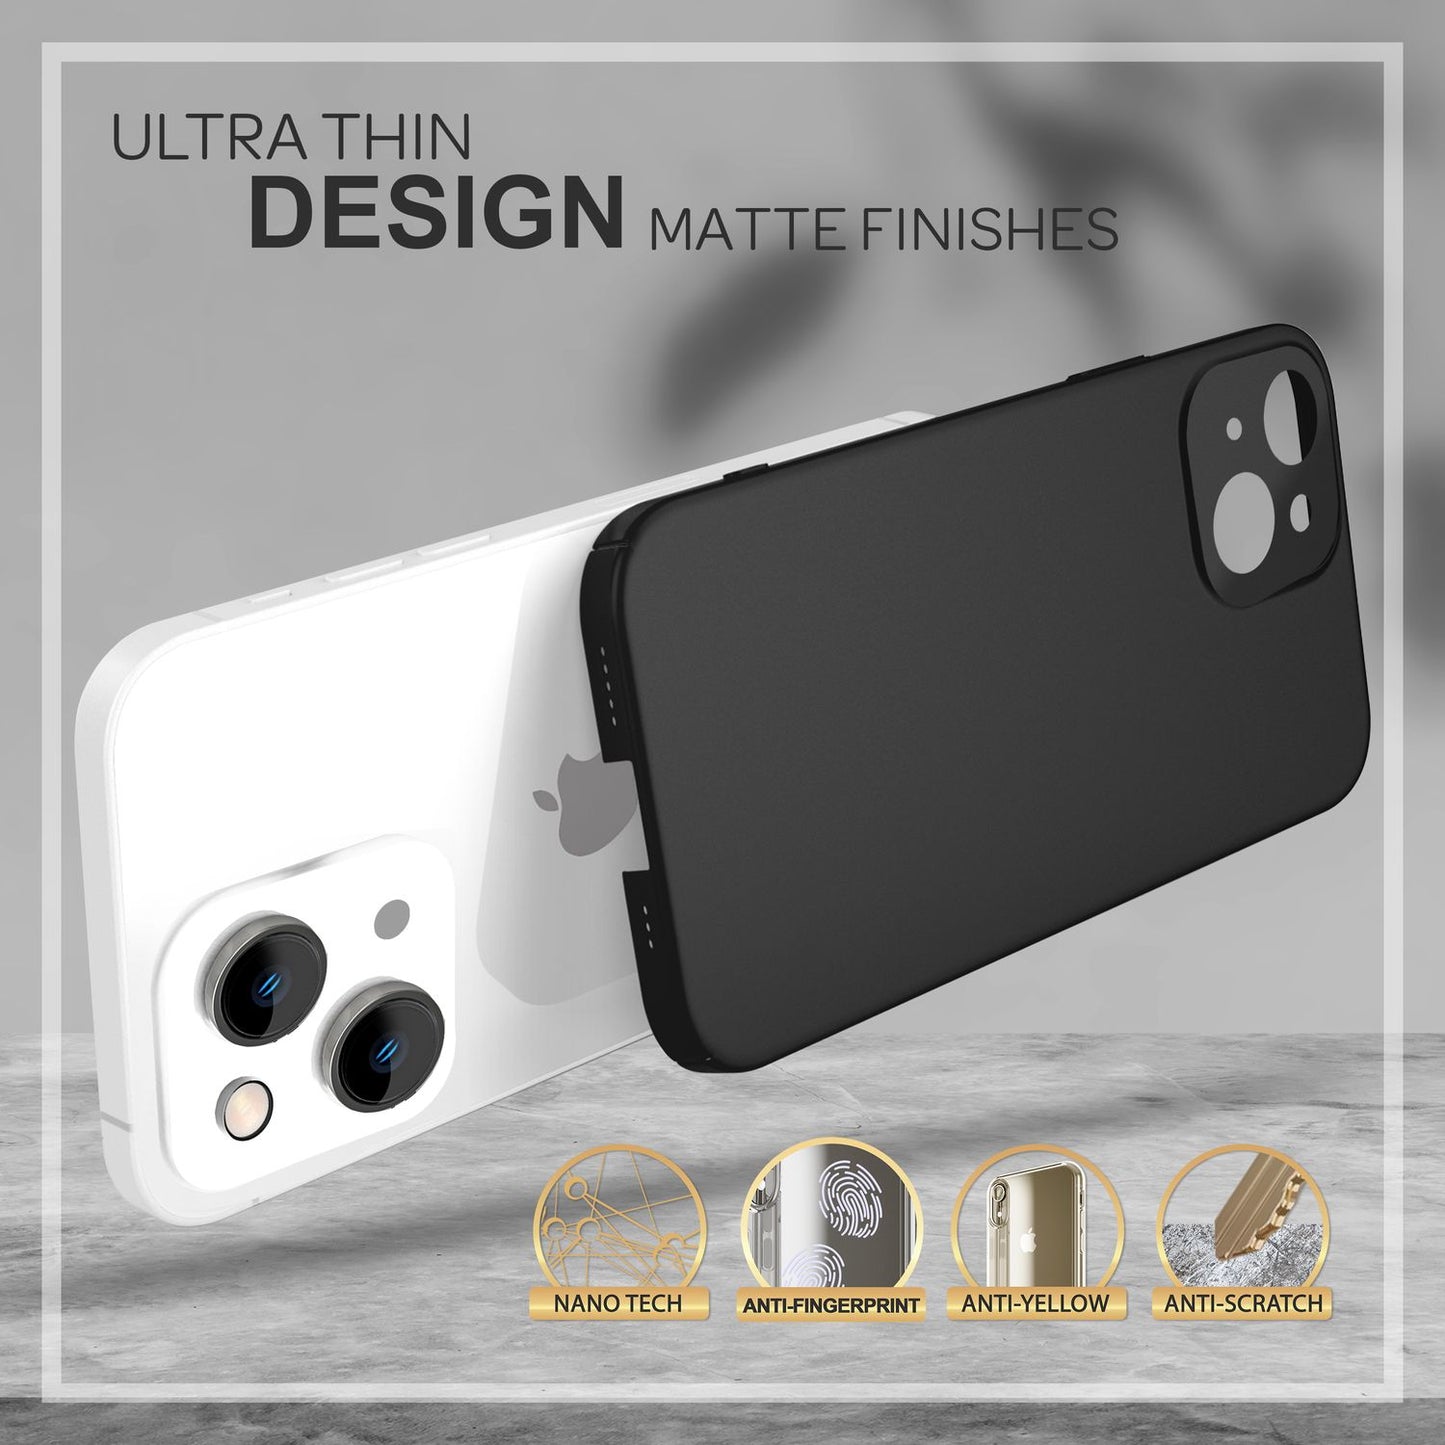 Dünnes Hardcase für iPhone 14, Schutz Hülle 0,5mm Slim Handy Cover Rutschfest